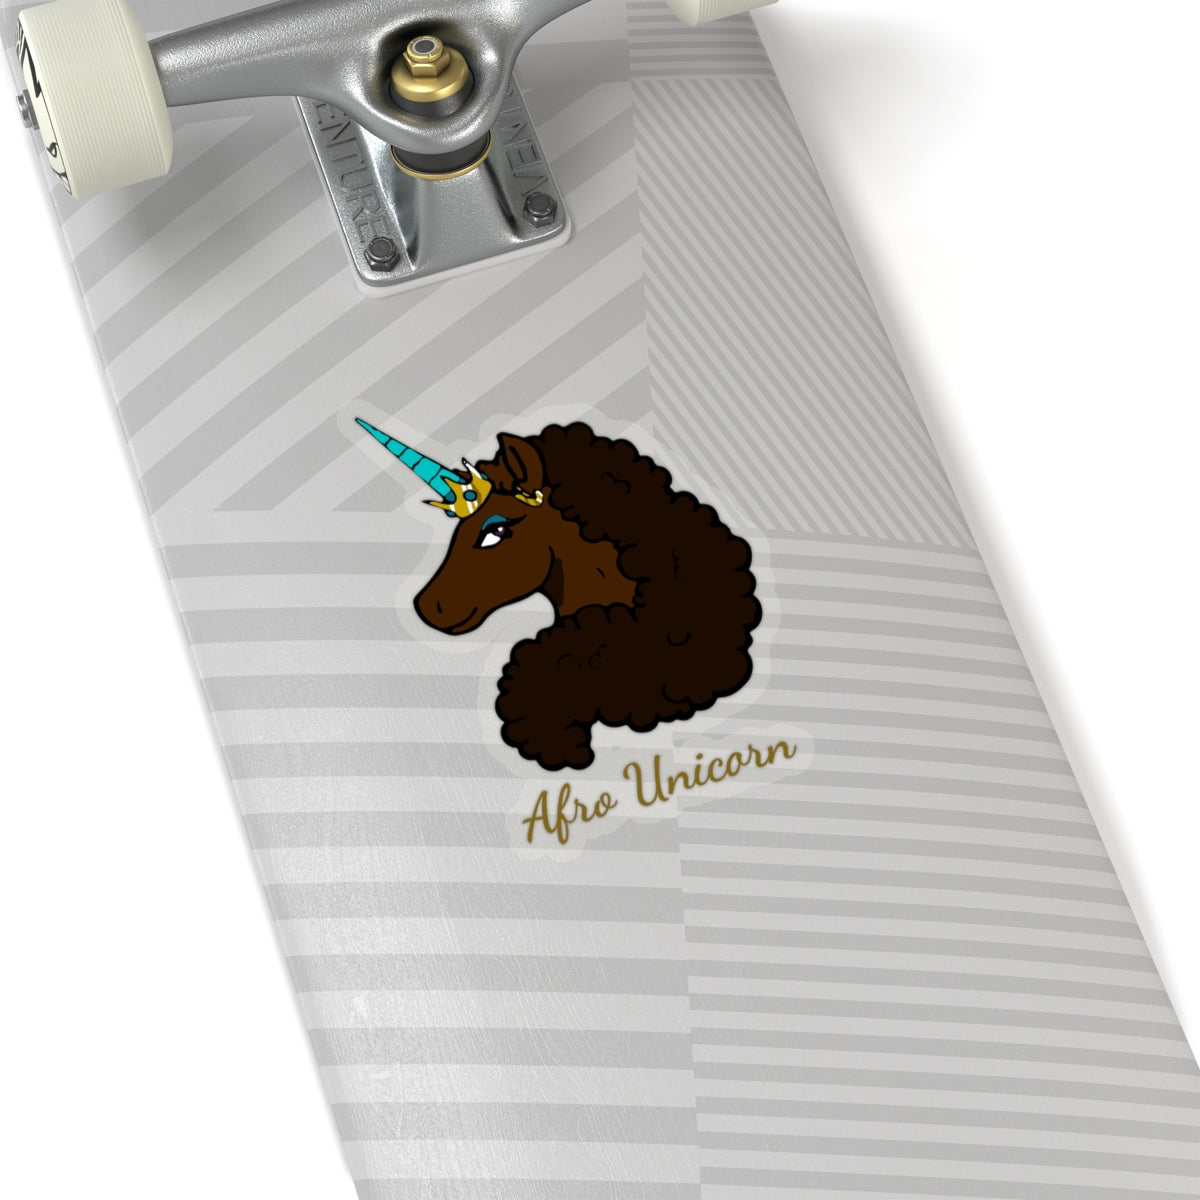 Cut-out Mocha Stickers- Afro Unicorn